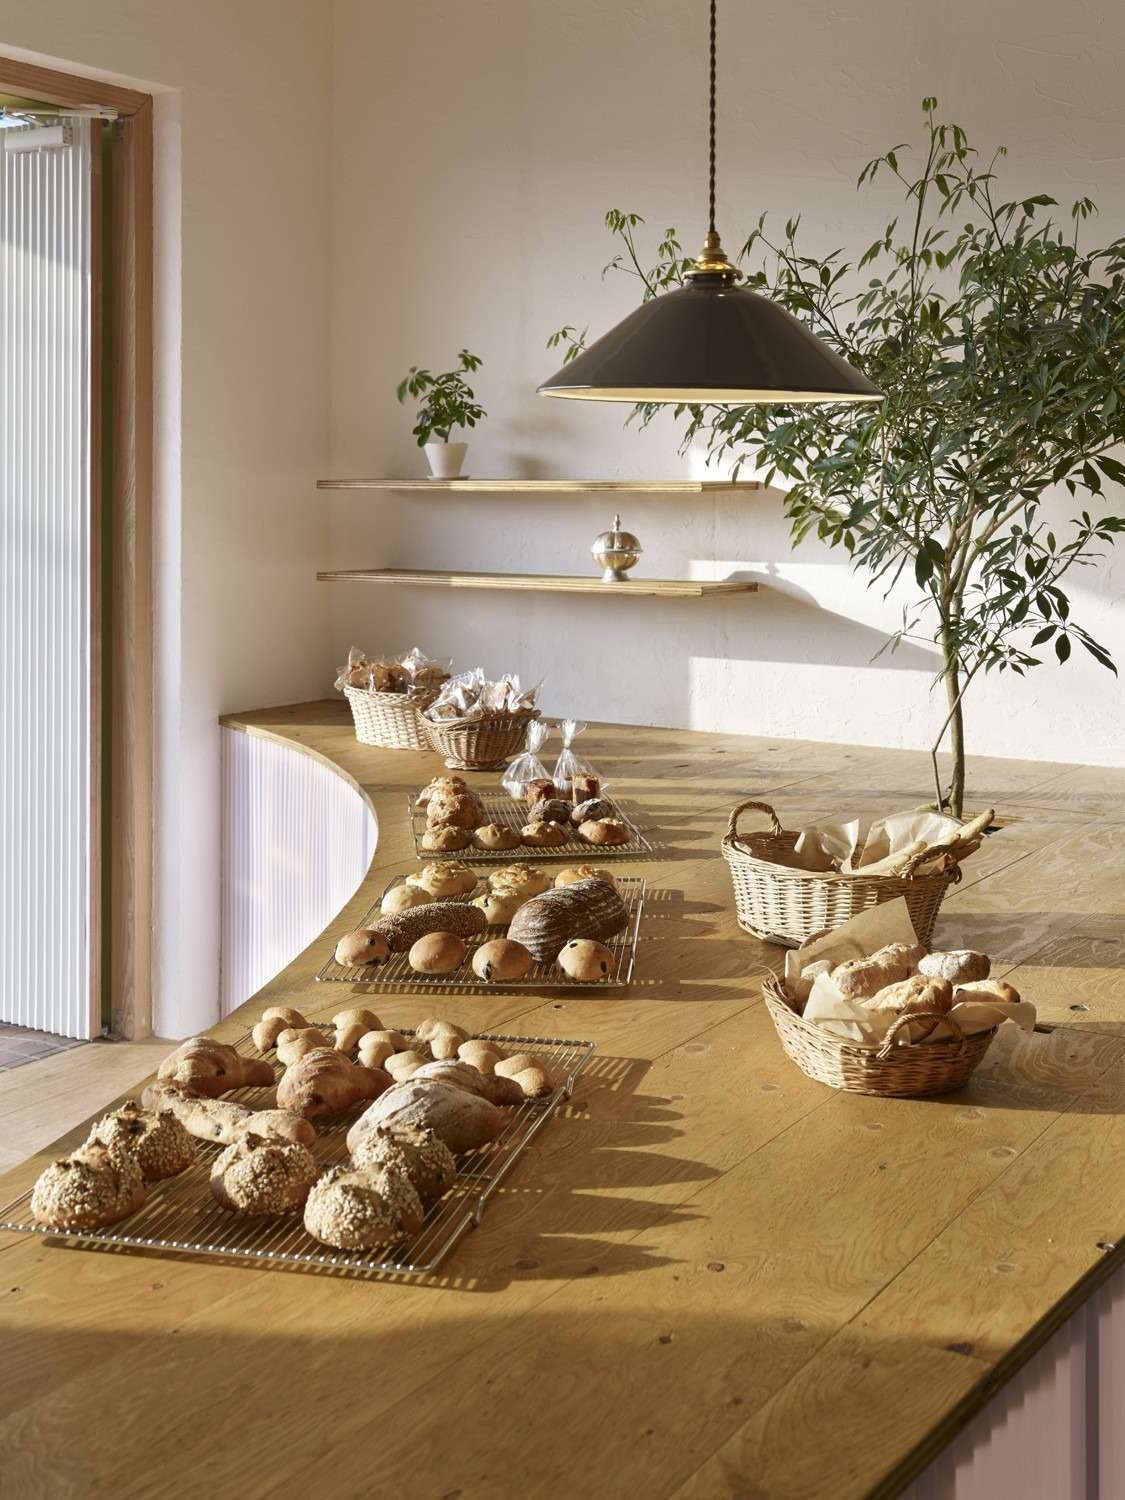 Bread Table